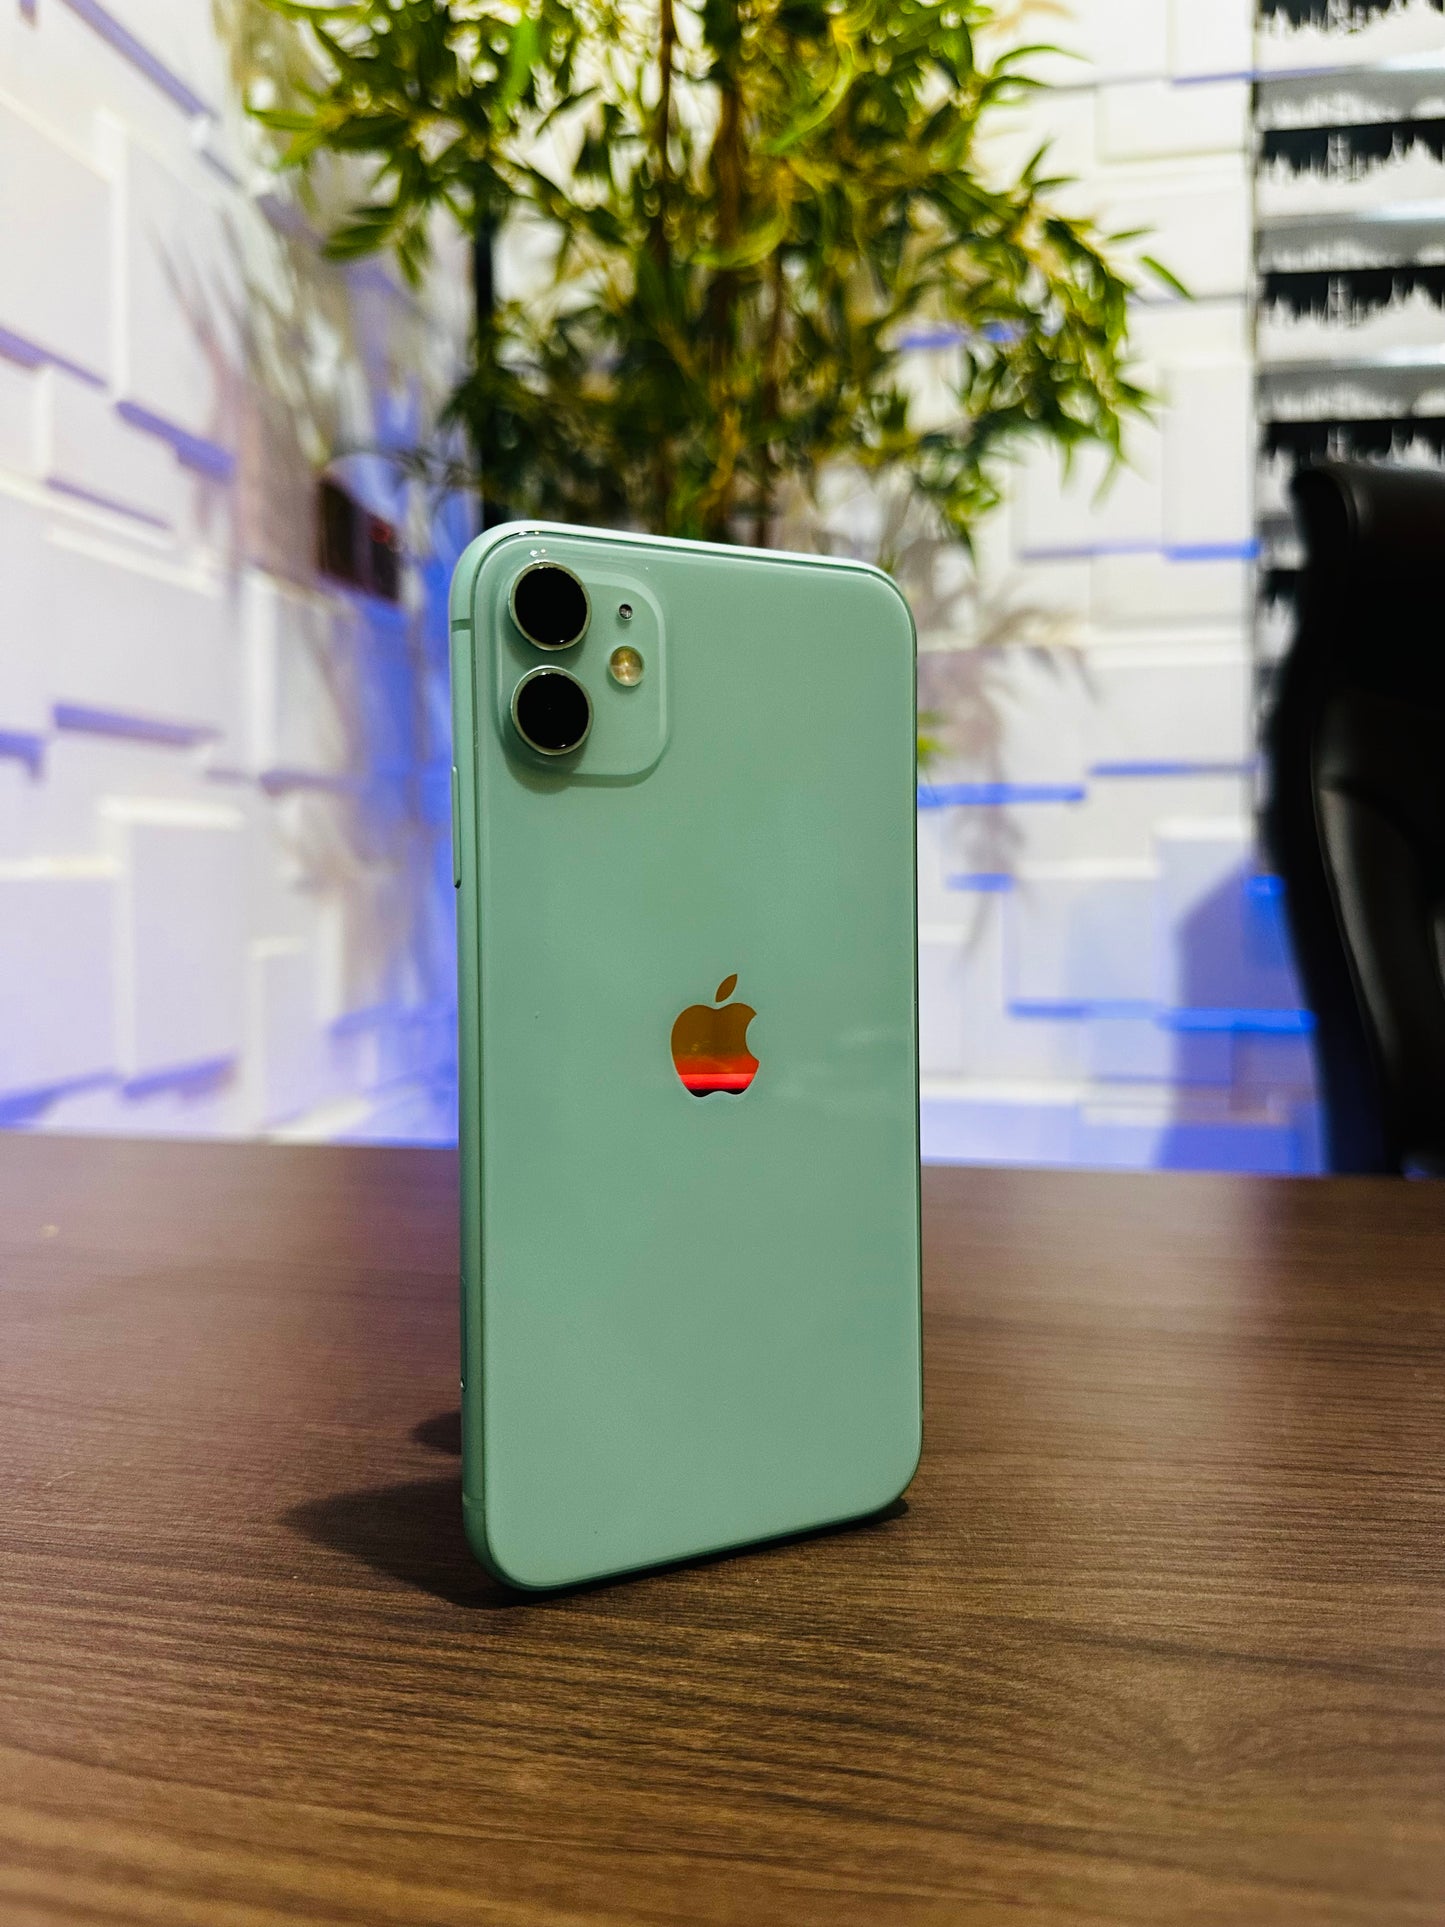 128GB Apple iPhone 11 - Green